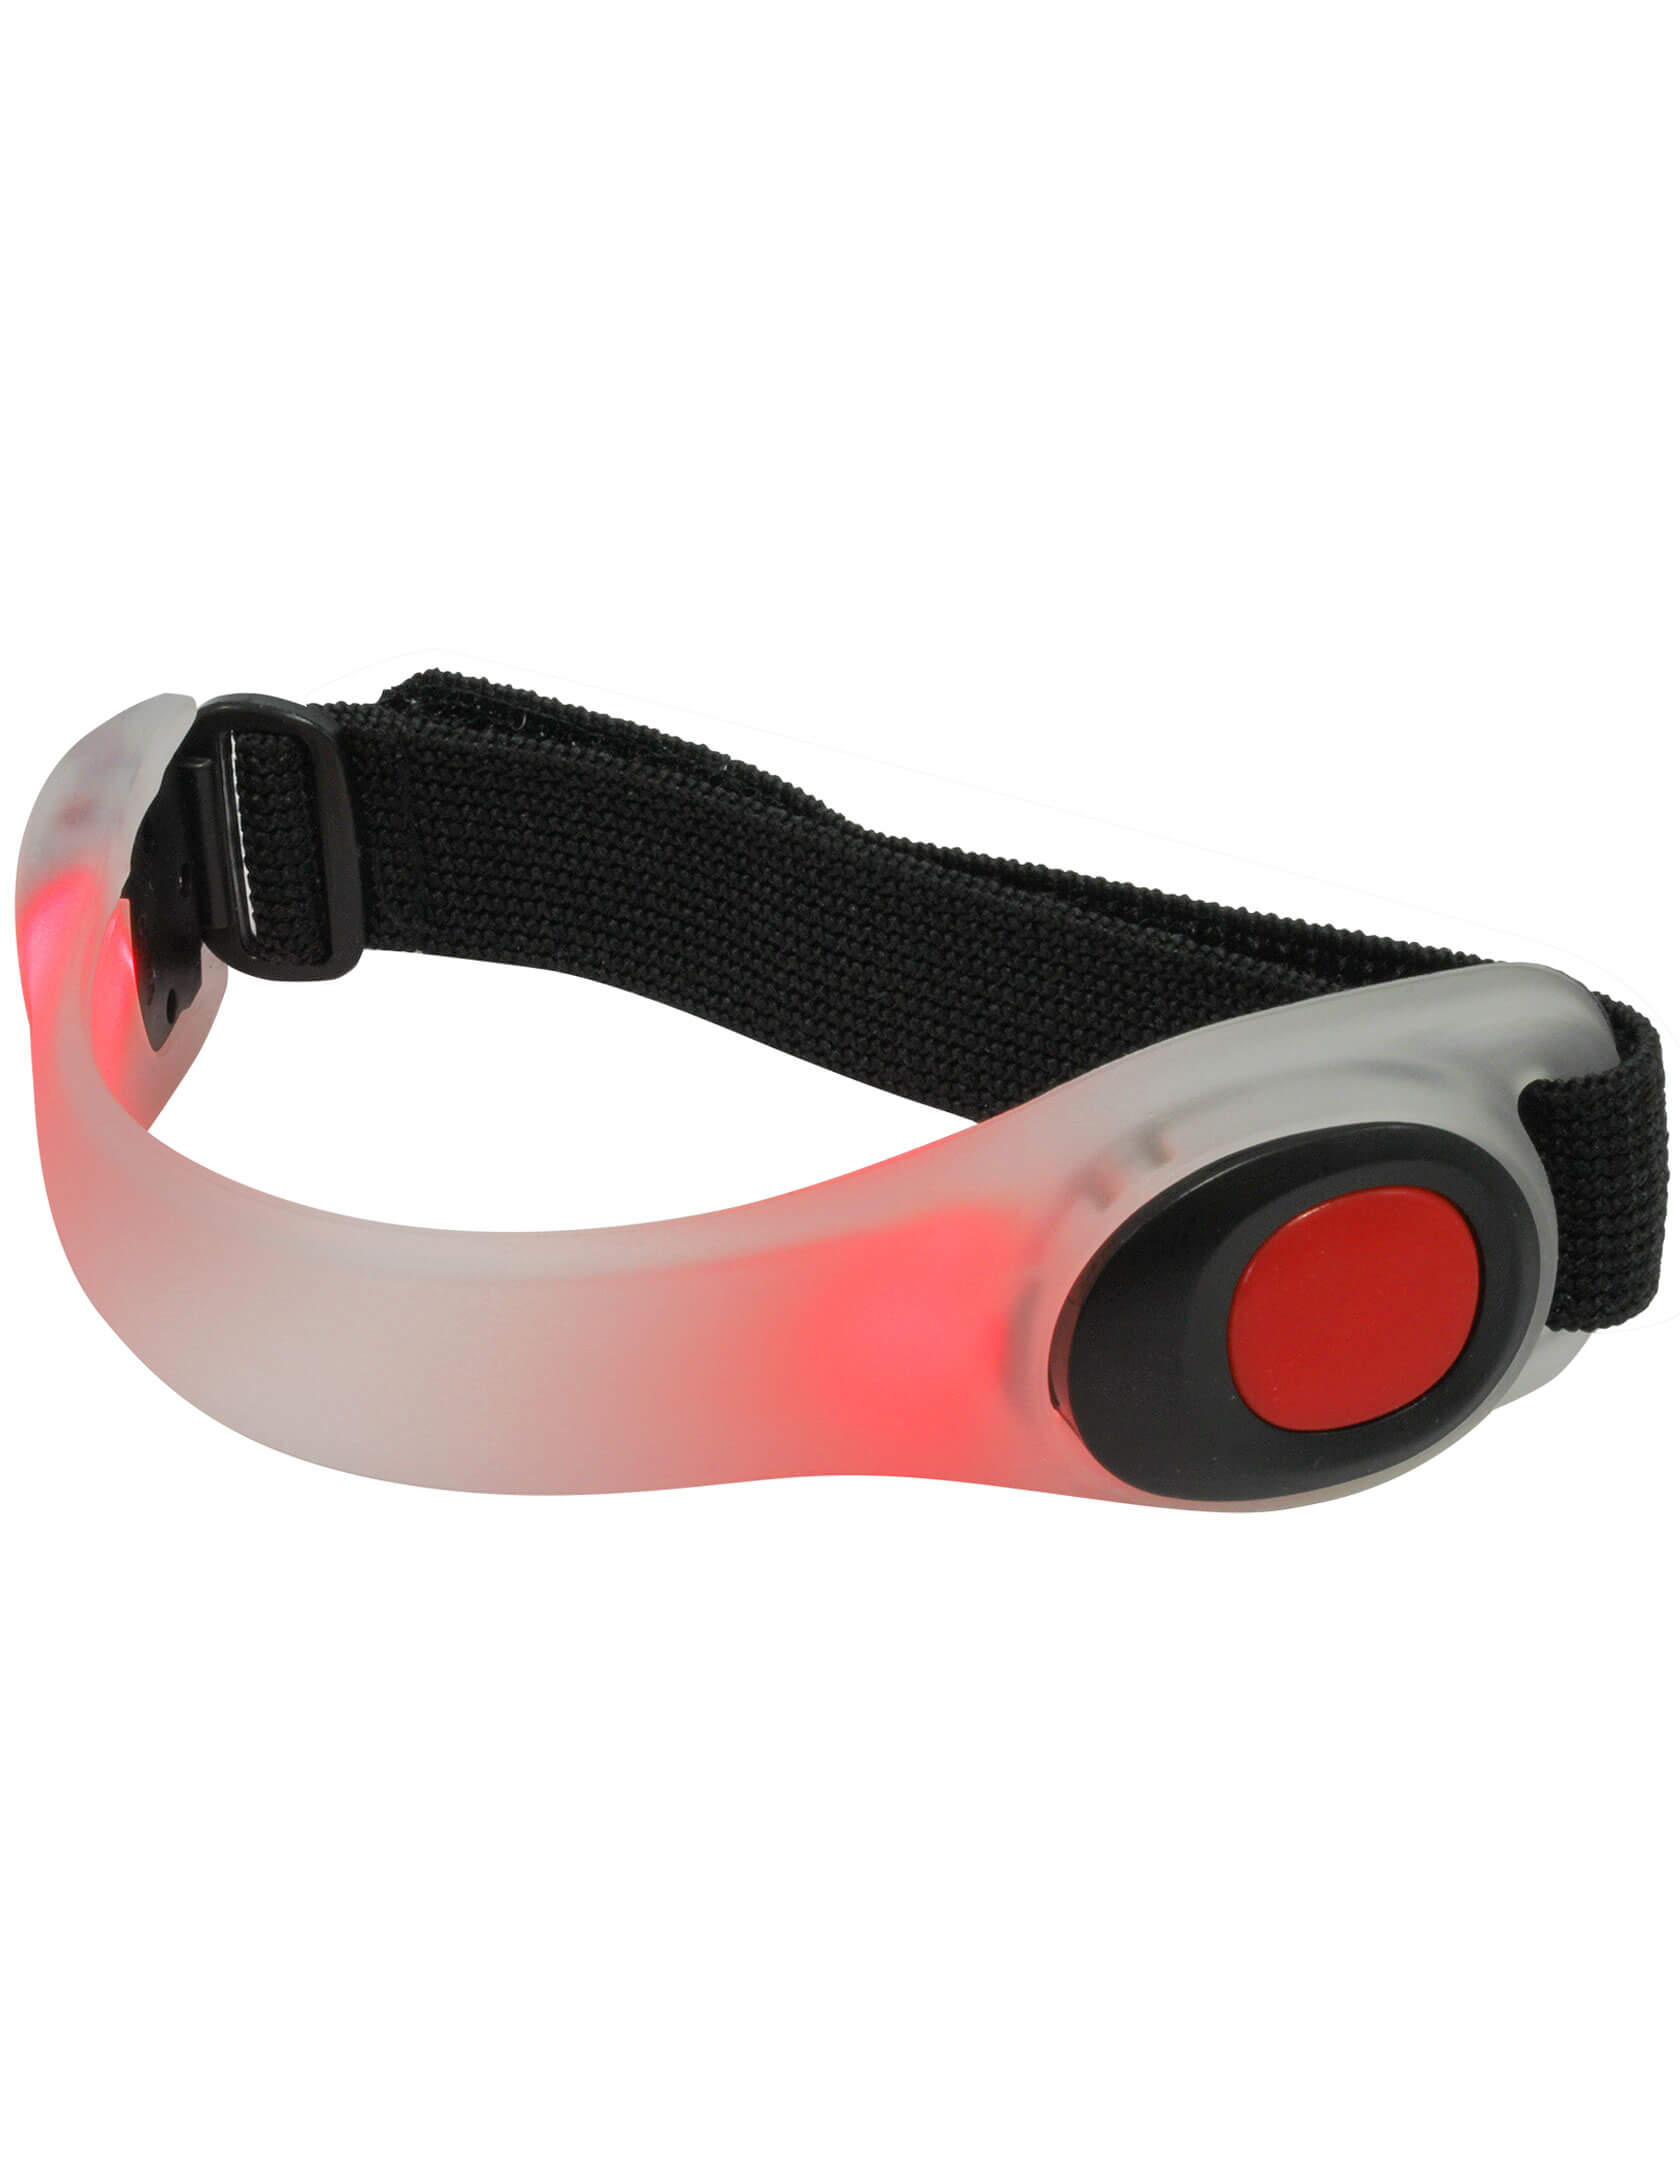 LED Reflektor Armband rot